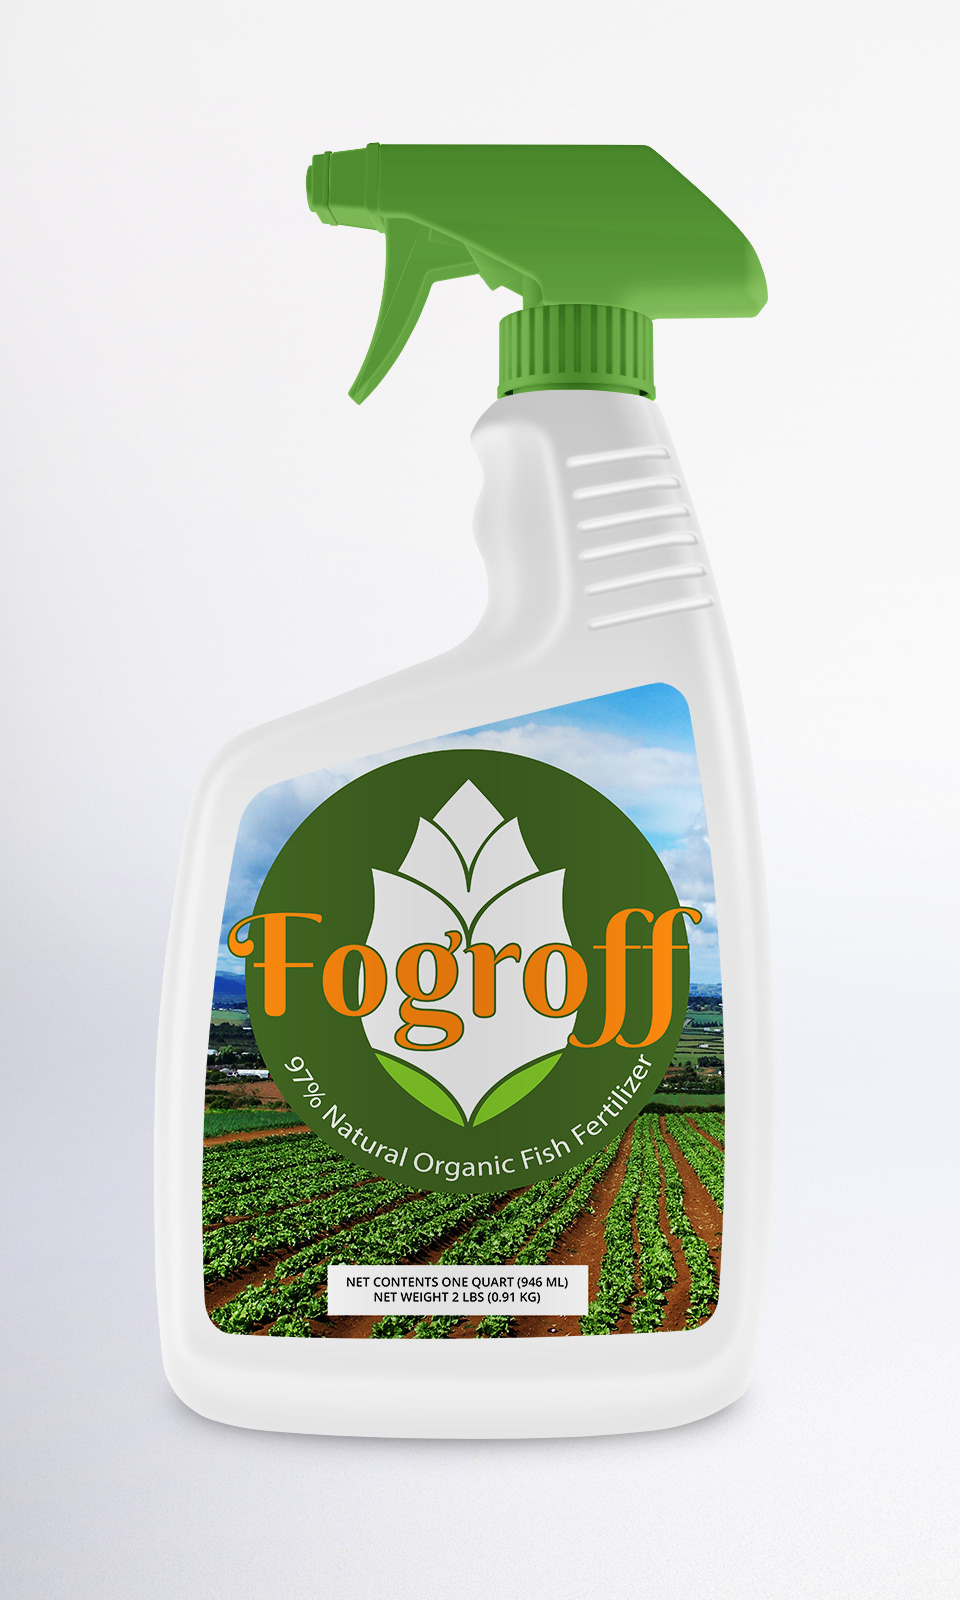 Fogroff Label labels logo